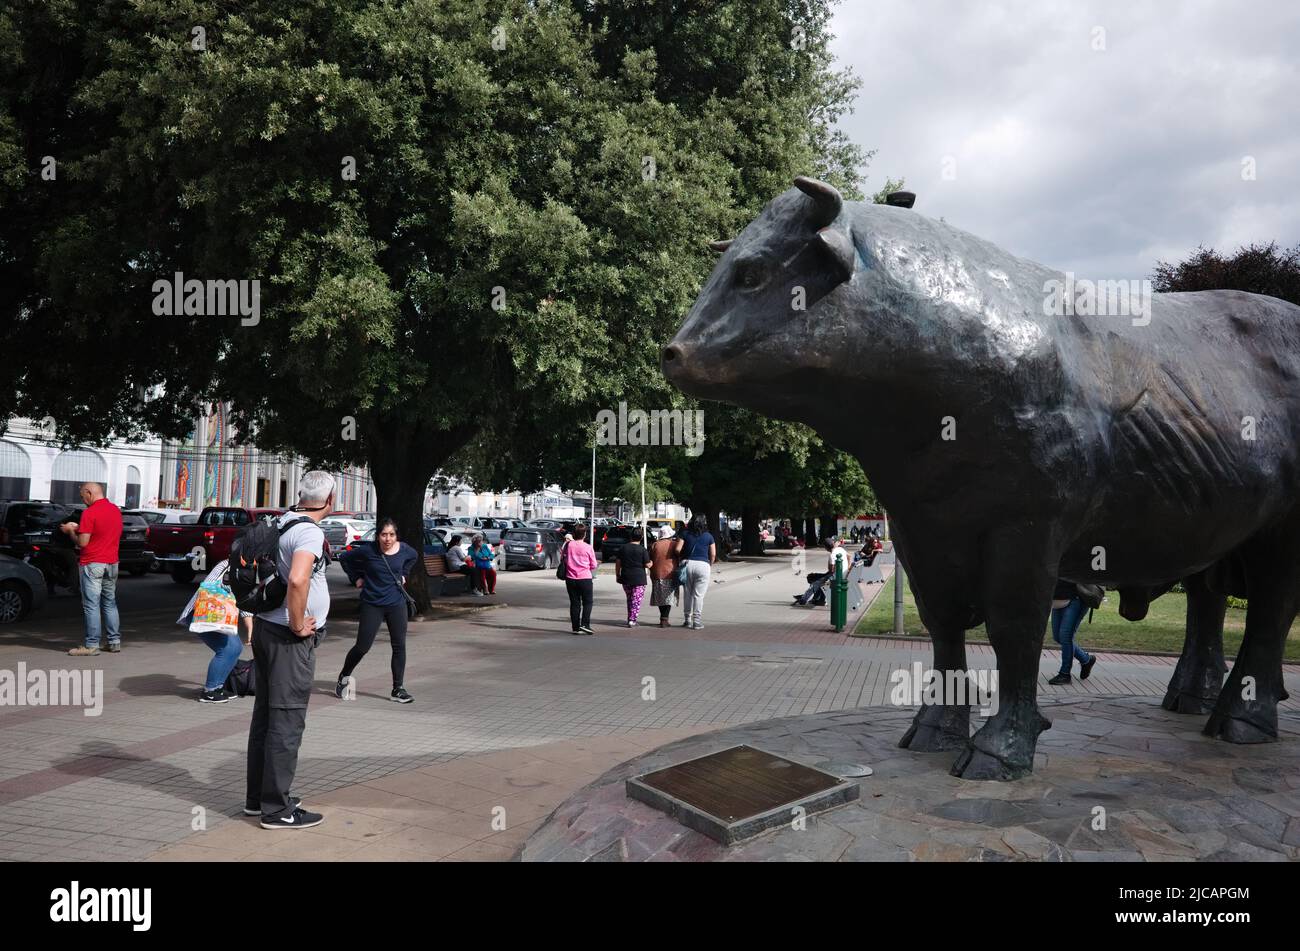 Osorno, Chile - Febrero de 2020: Monumento metálico al toro en la Plaza de Armas de Osorno dedicado a la cultura y tradiciones de la ganadería Foto de stock